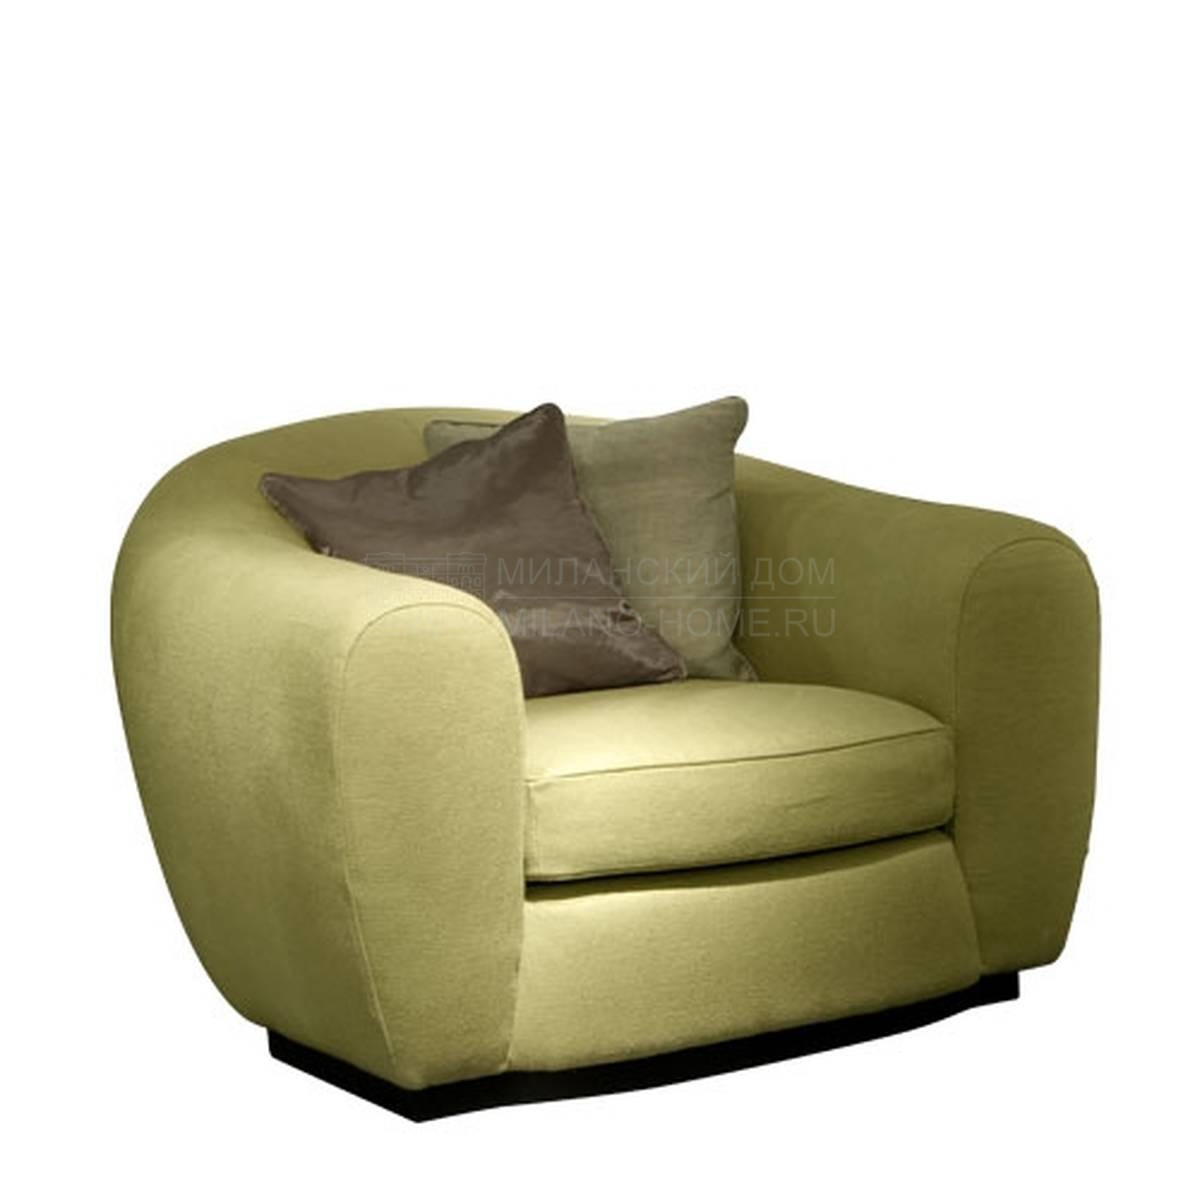 Кресло Tobia / armchair из Италии фабрики SOFTHOUSE